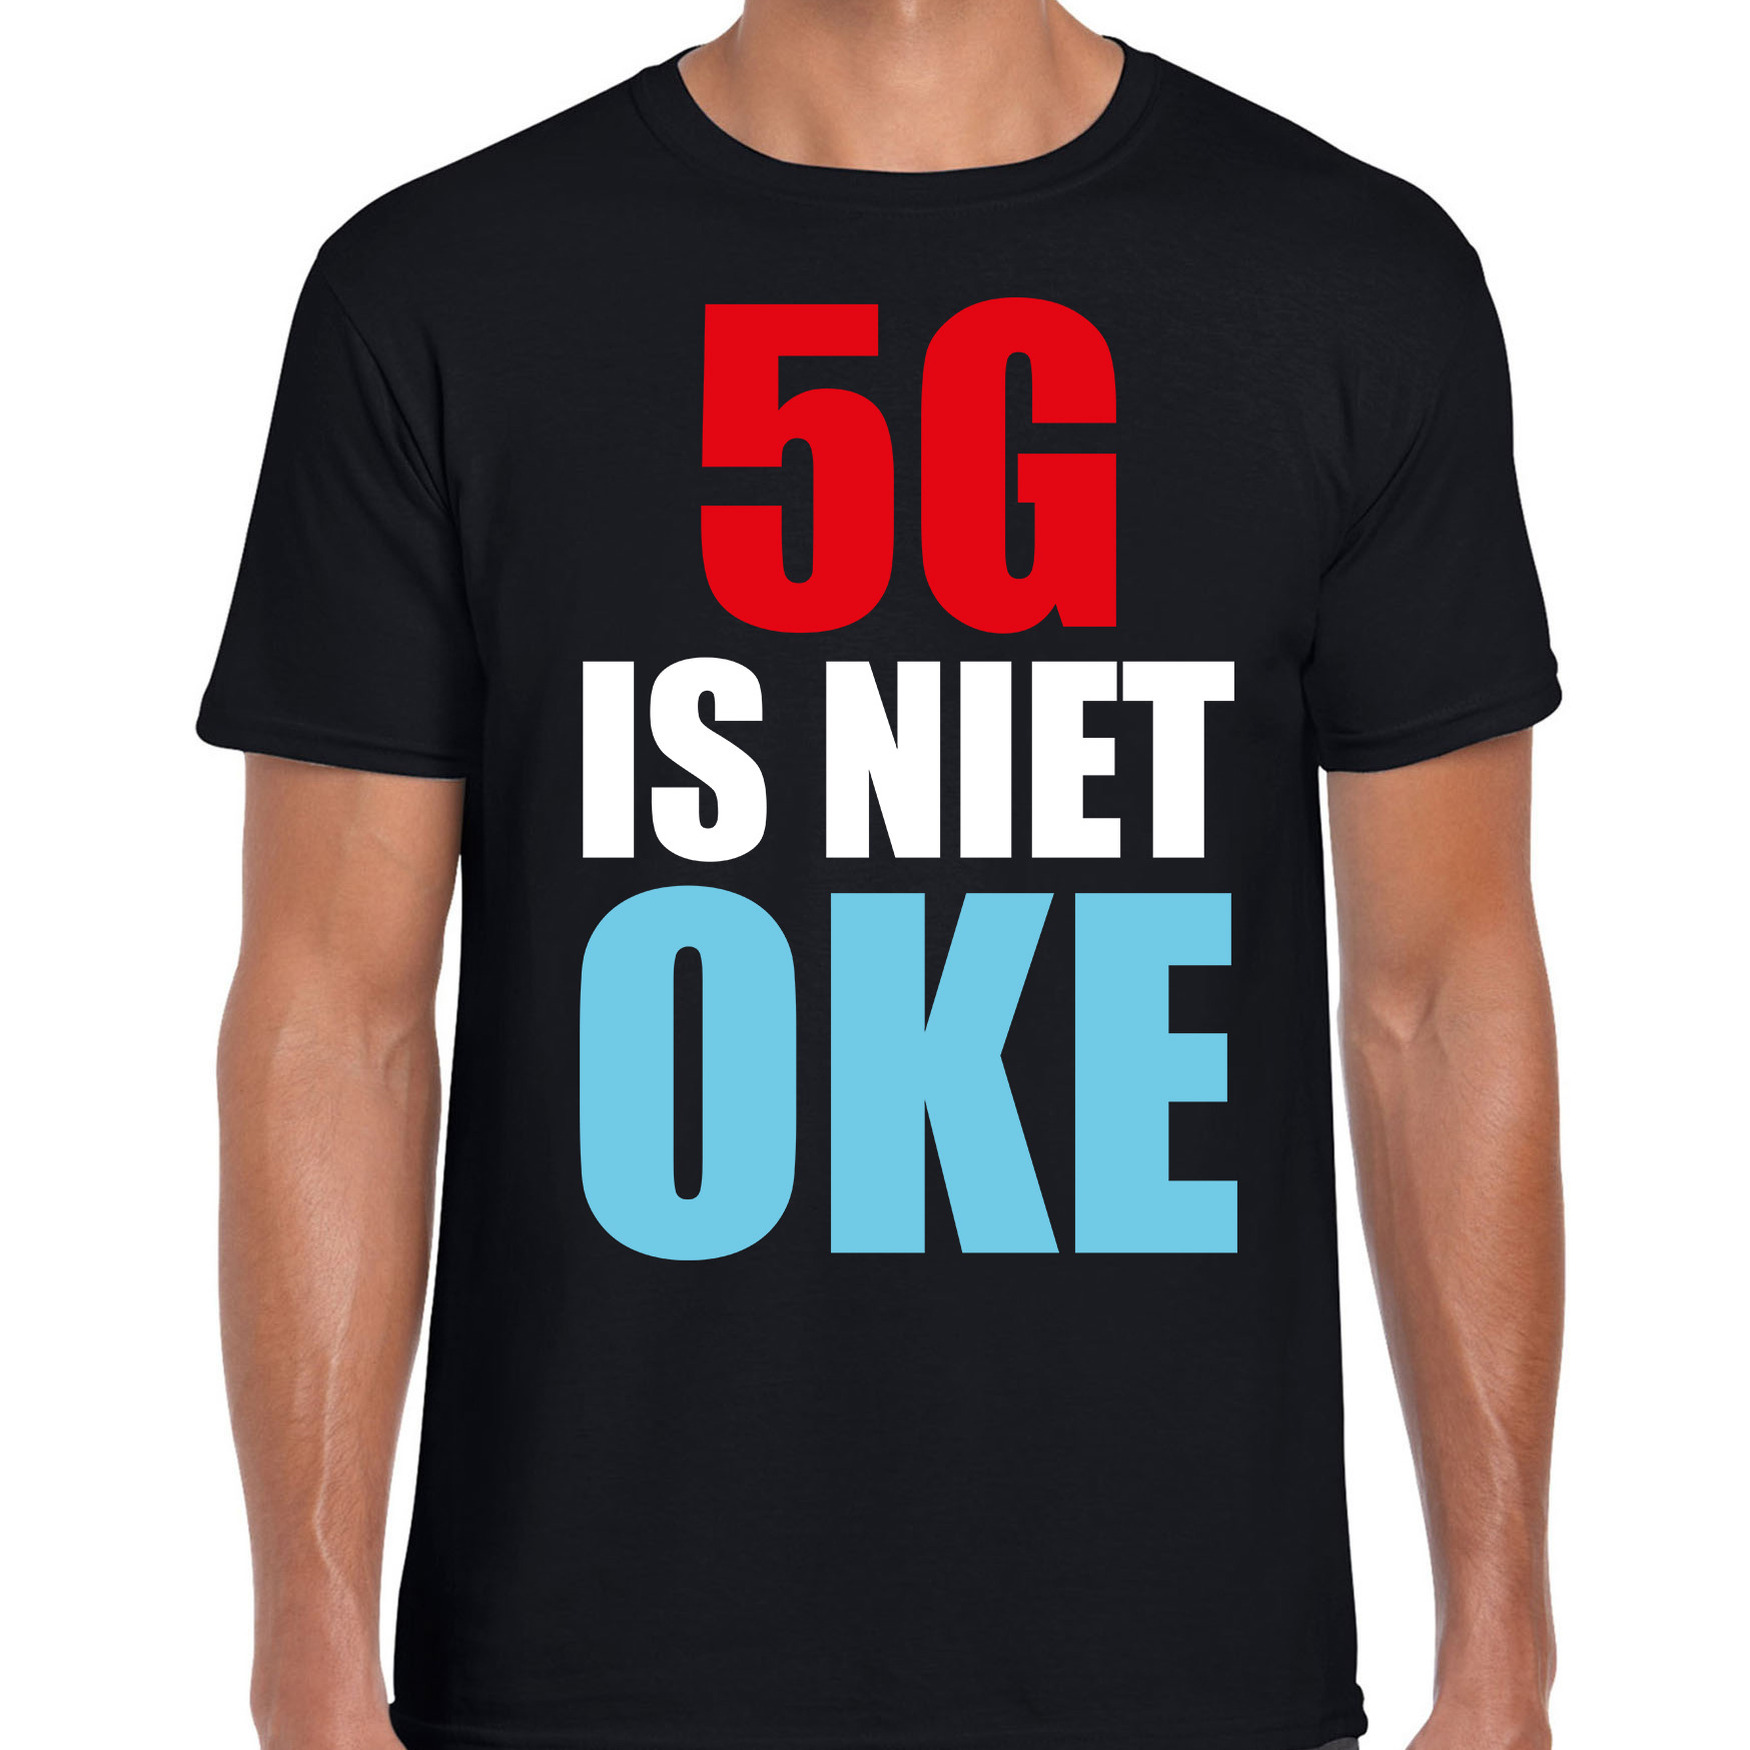 5G is niet oke demonstratie-protest t-shirt zwart voor heren